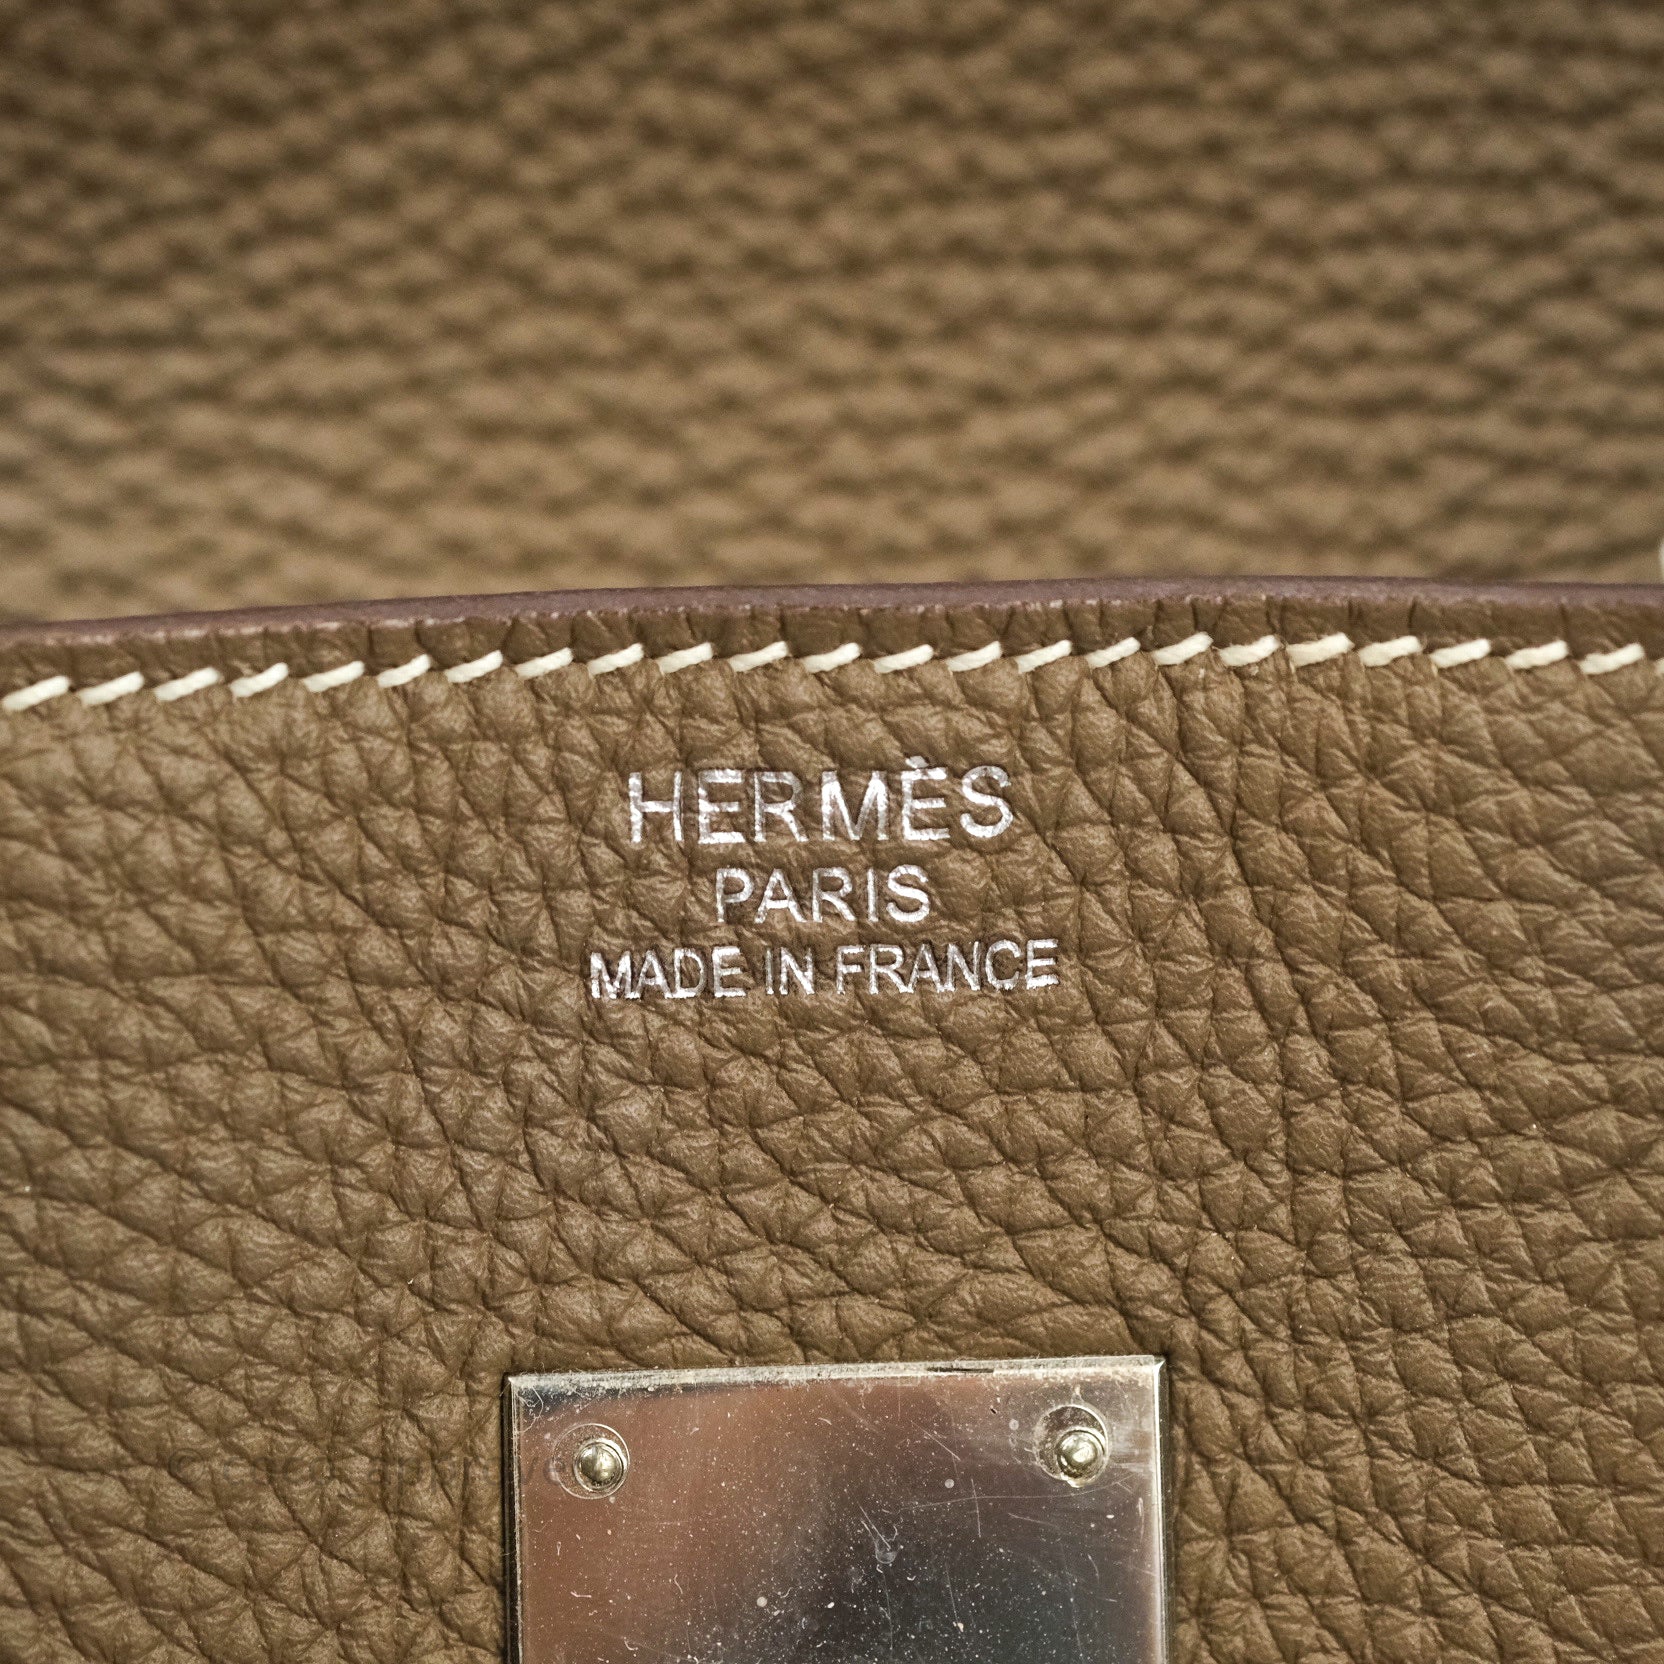 Hermès Birkin 35 In Etoupe Togo Leather With Palladium Hardware in